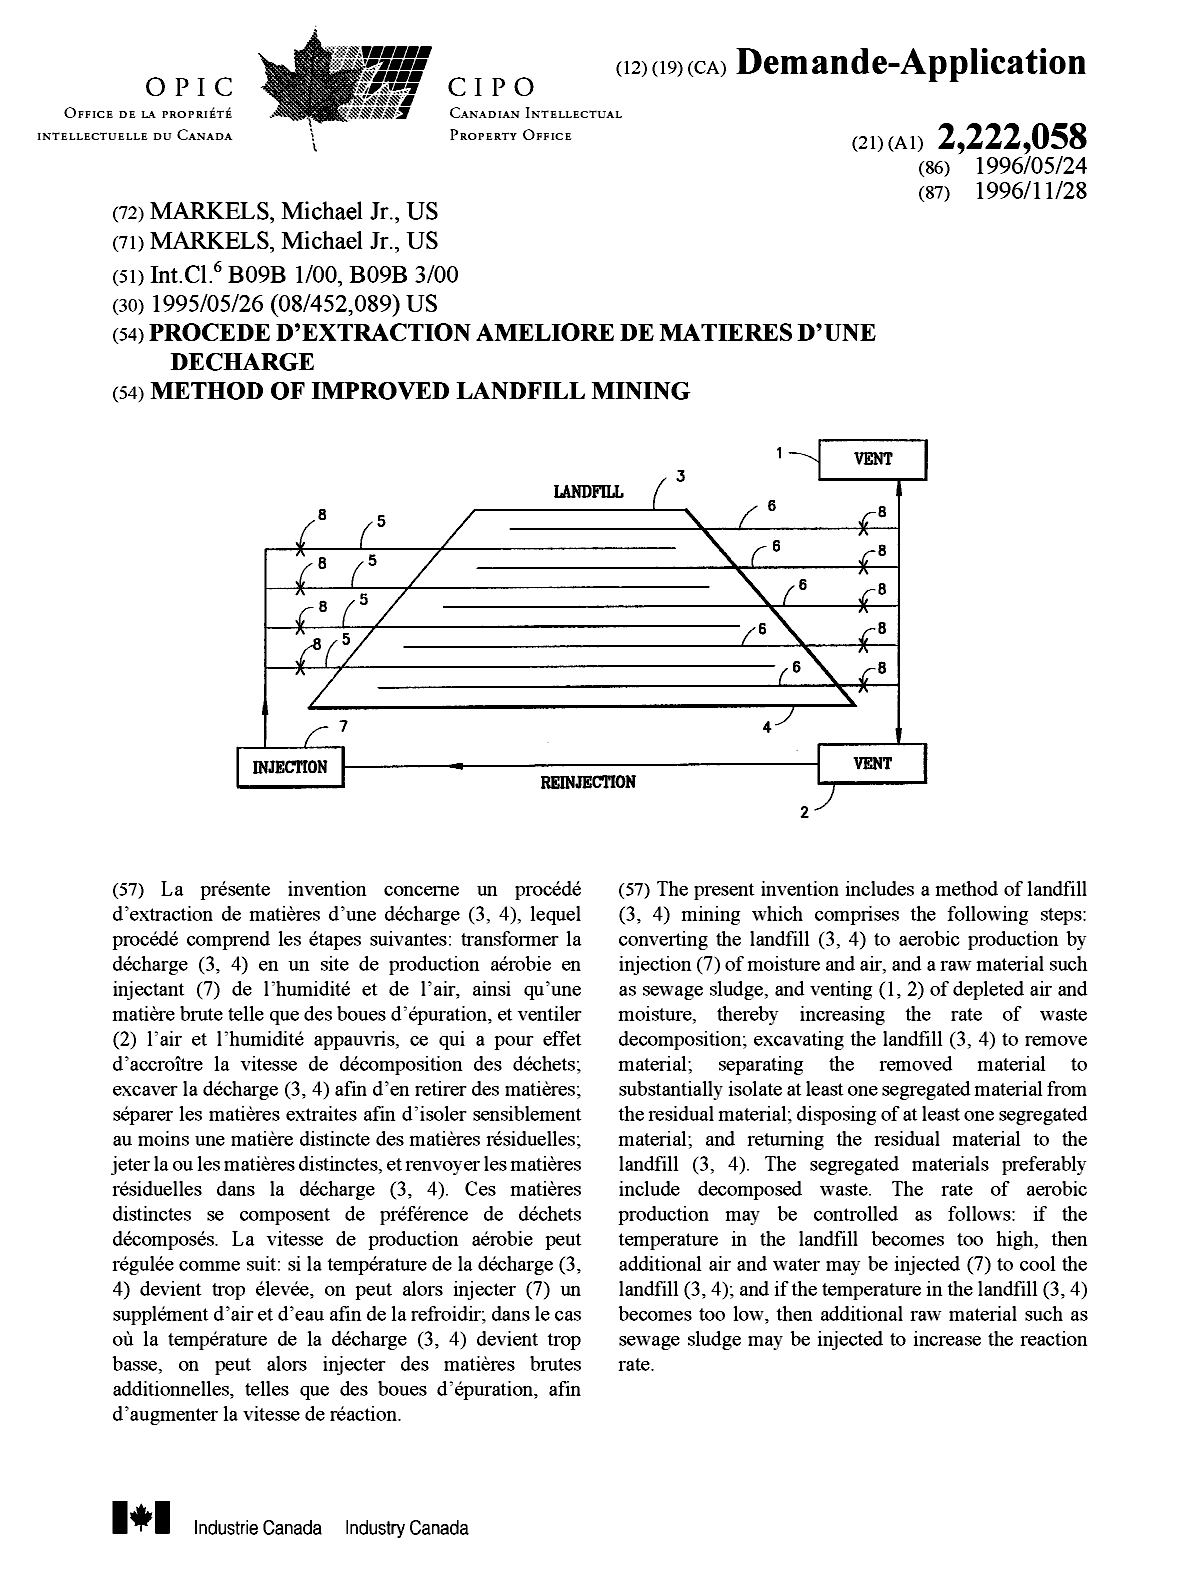 Document de brevet canadien 2222058. Page couverture 19980318. Image 1 de 1